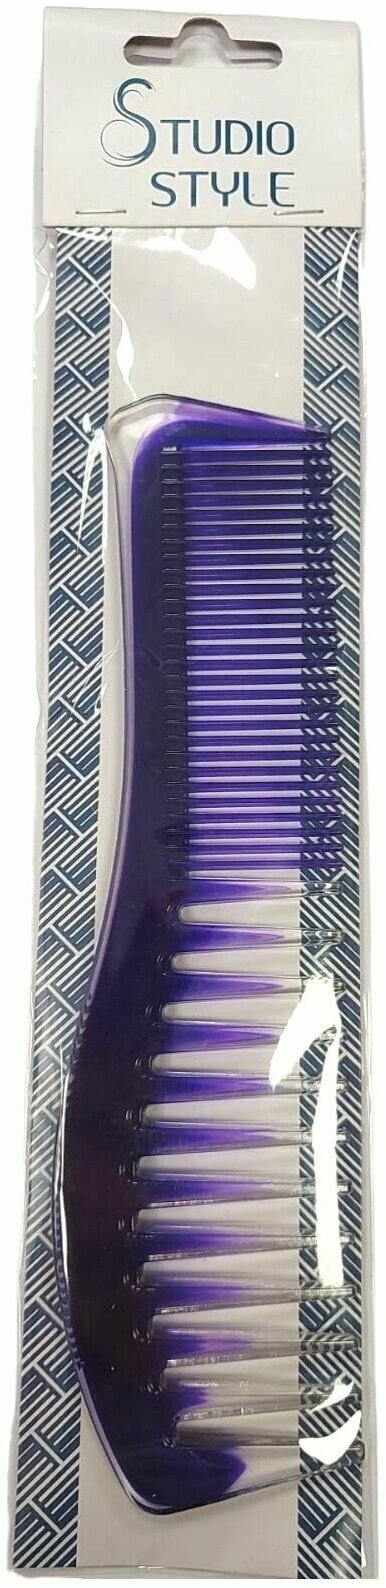 STUDIO STYLE Расческа гребень для укладки и тушевки волос, фиолетовая